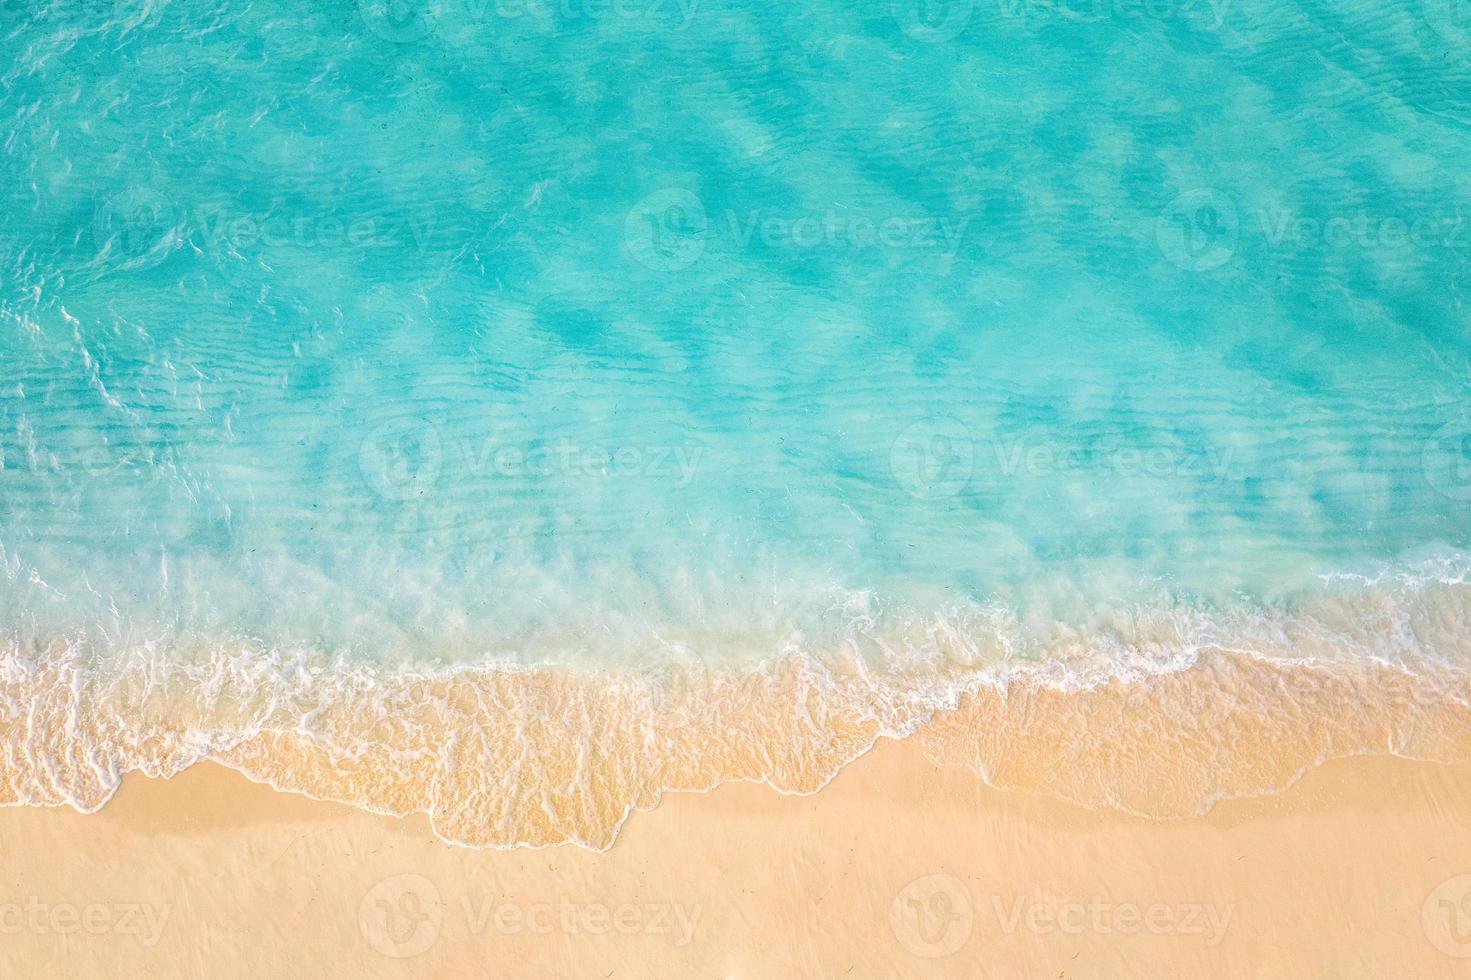 costa de arena con agua de mar verde turquesa. pequeñas olas en la playa. hermoso fondo de playa de isla tropical paraíso, paisaje aéreo superior océano turquesa en un día soleado. libertad viajes de verano foto